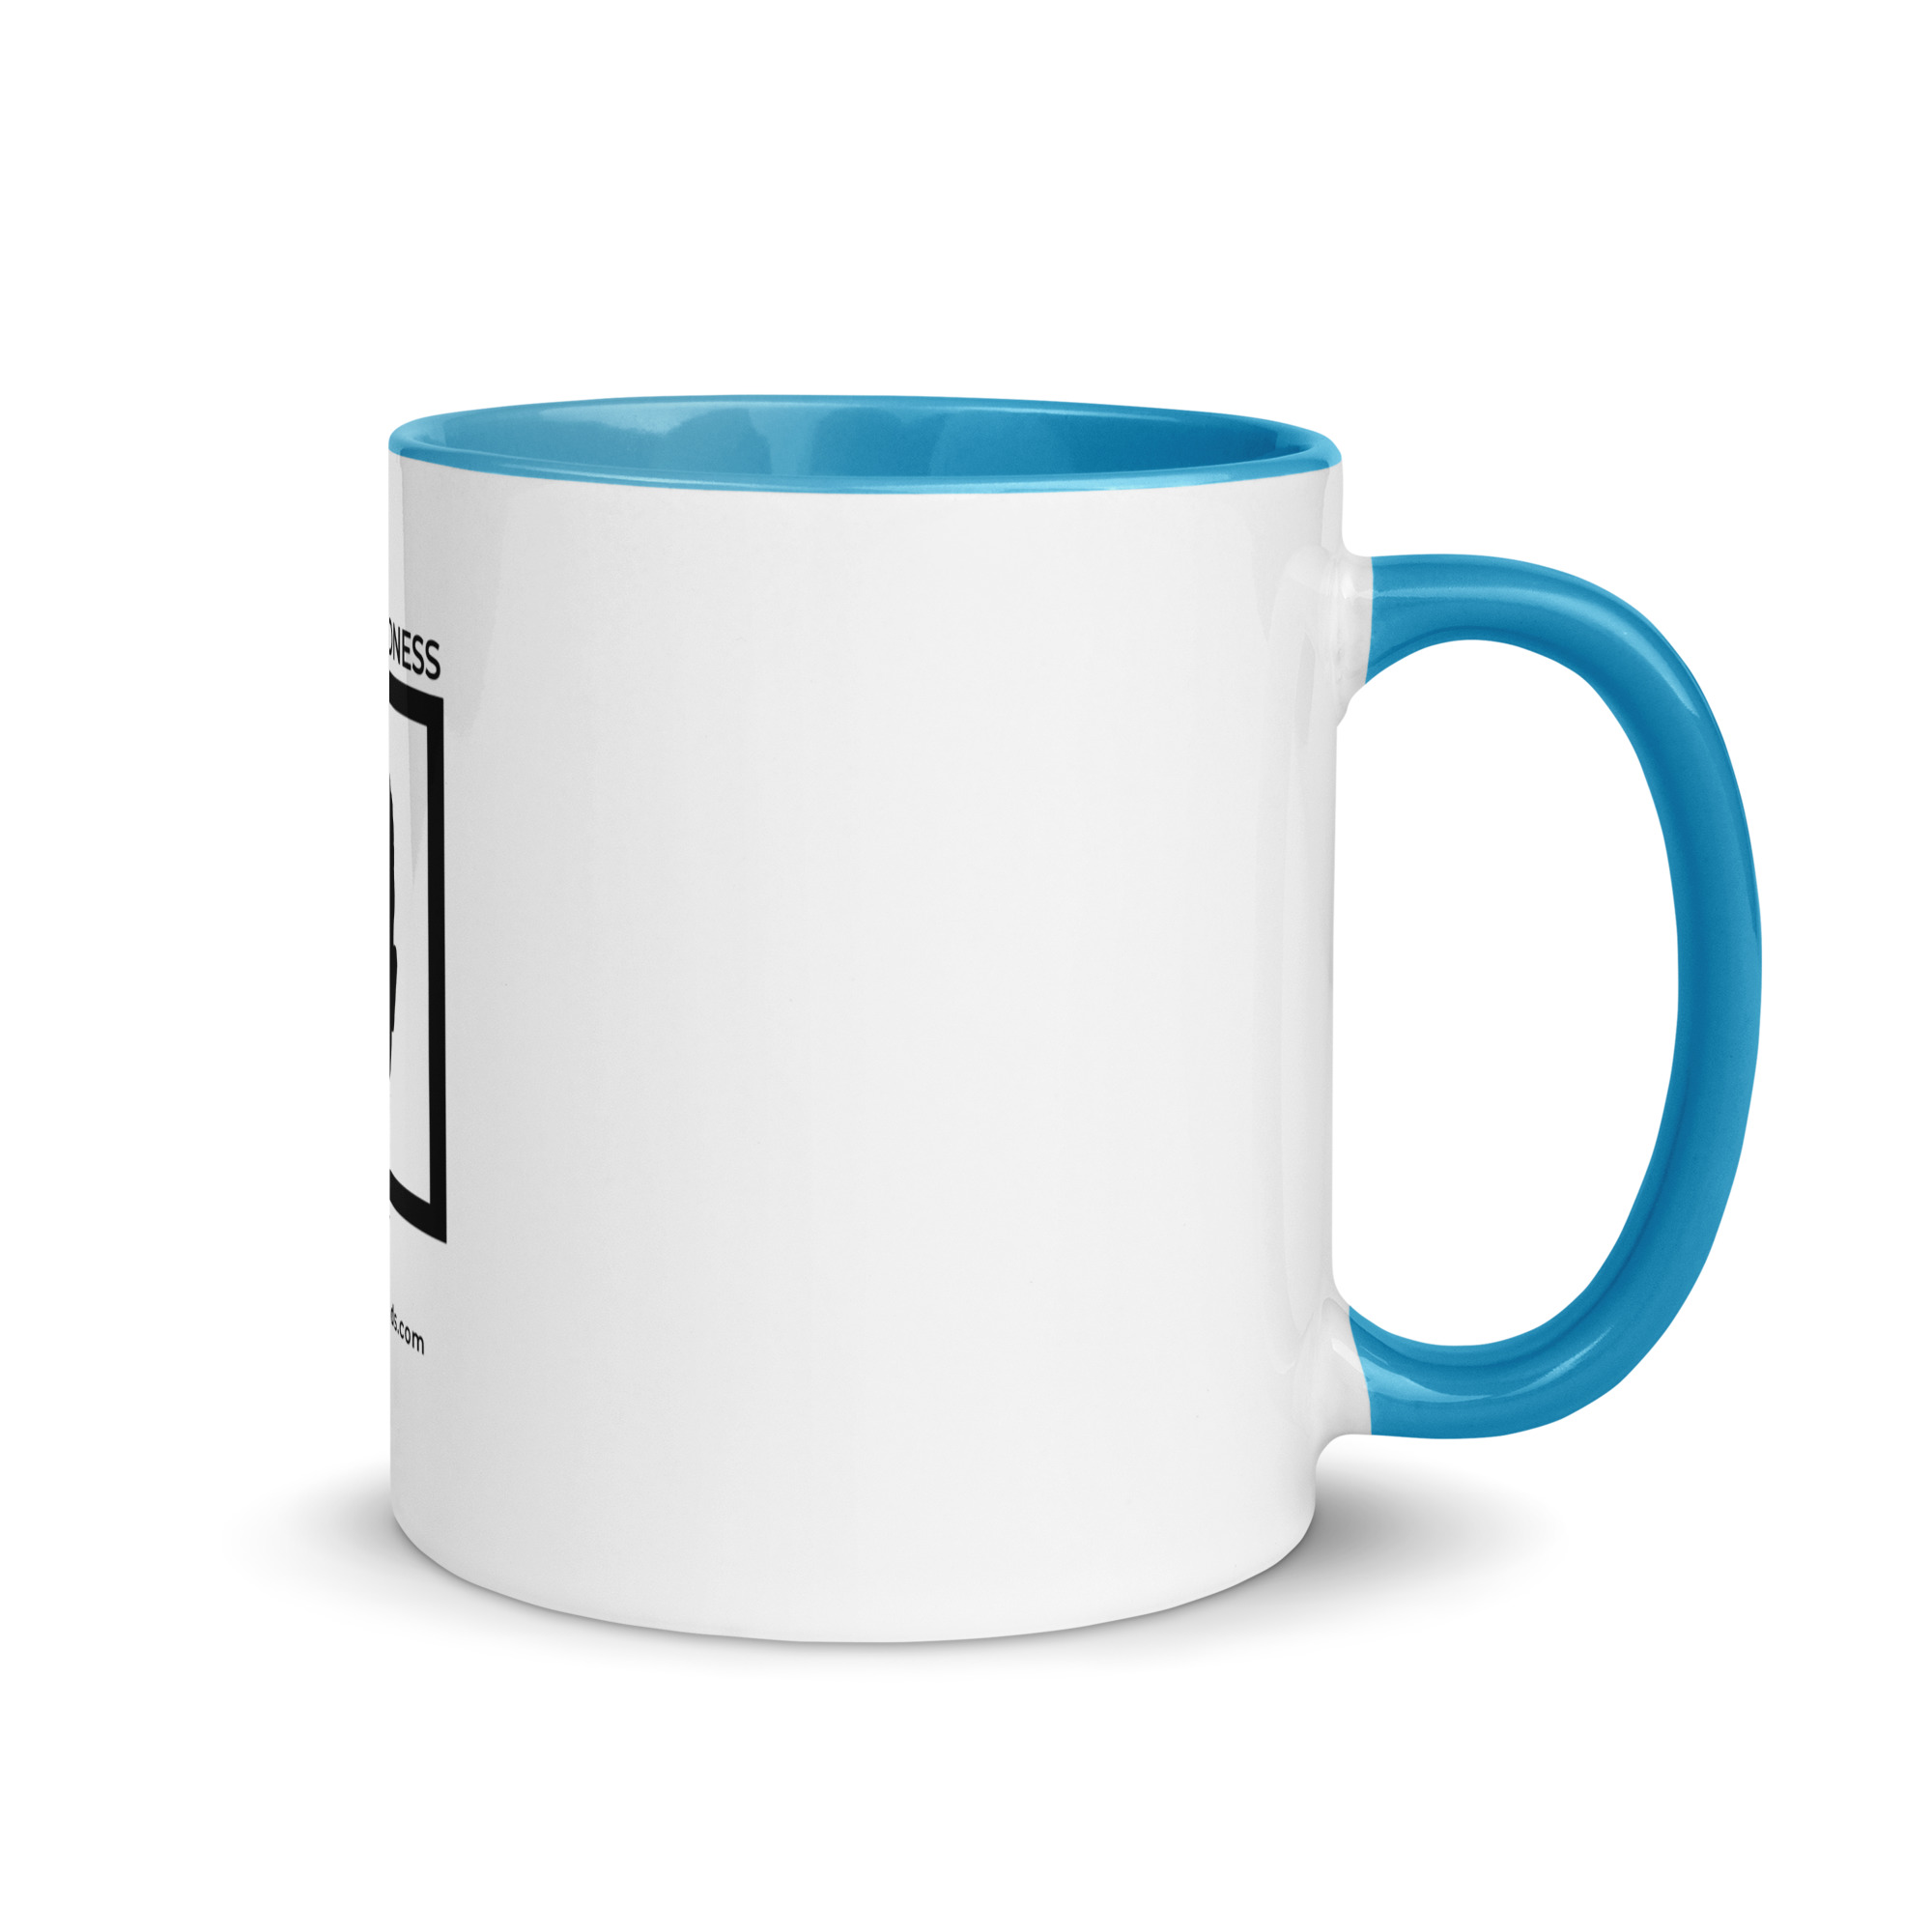 white-ceramic-mug-with-color-inside-blue-11-oz-right-6522a1a404076.jpg